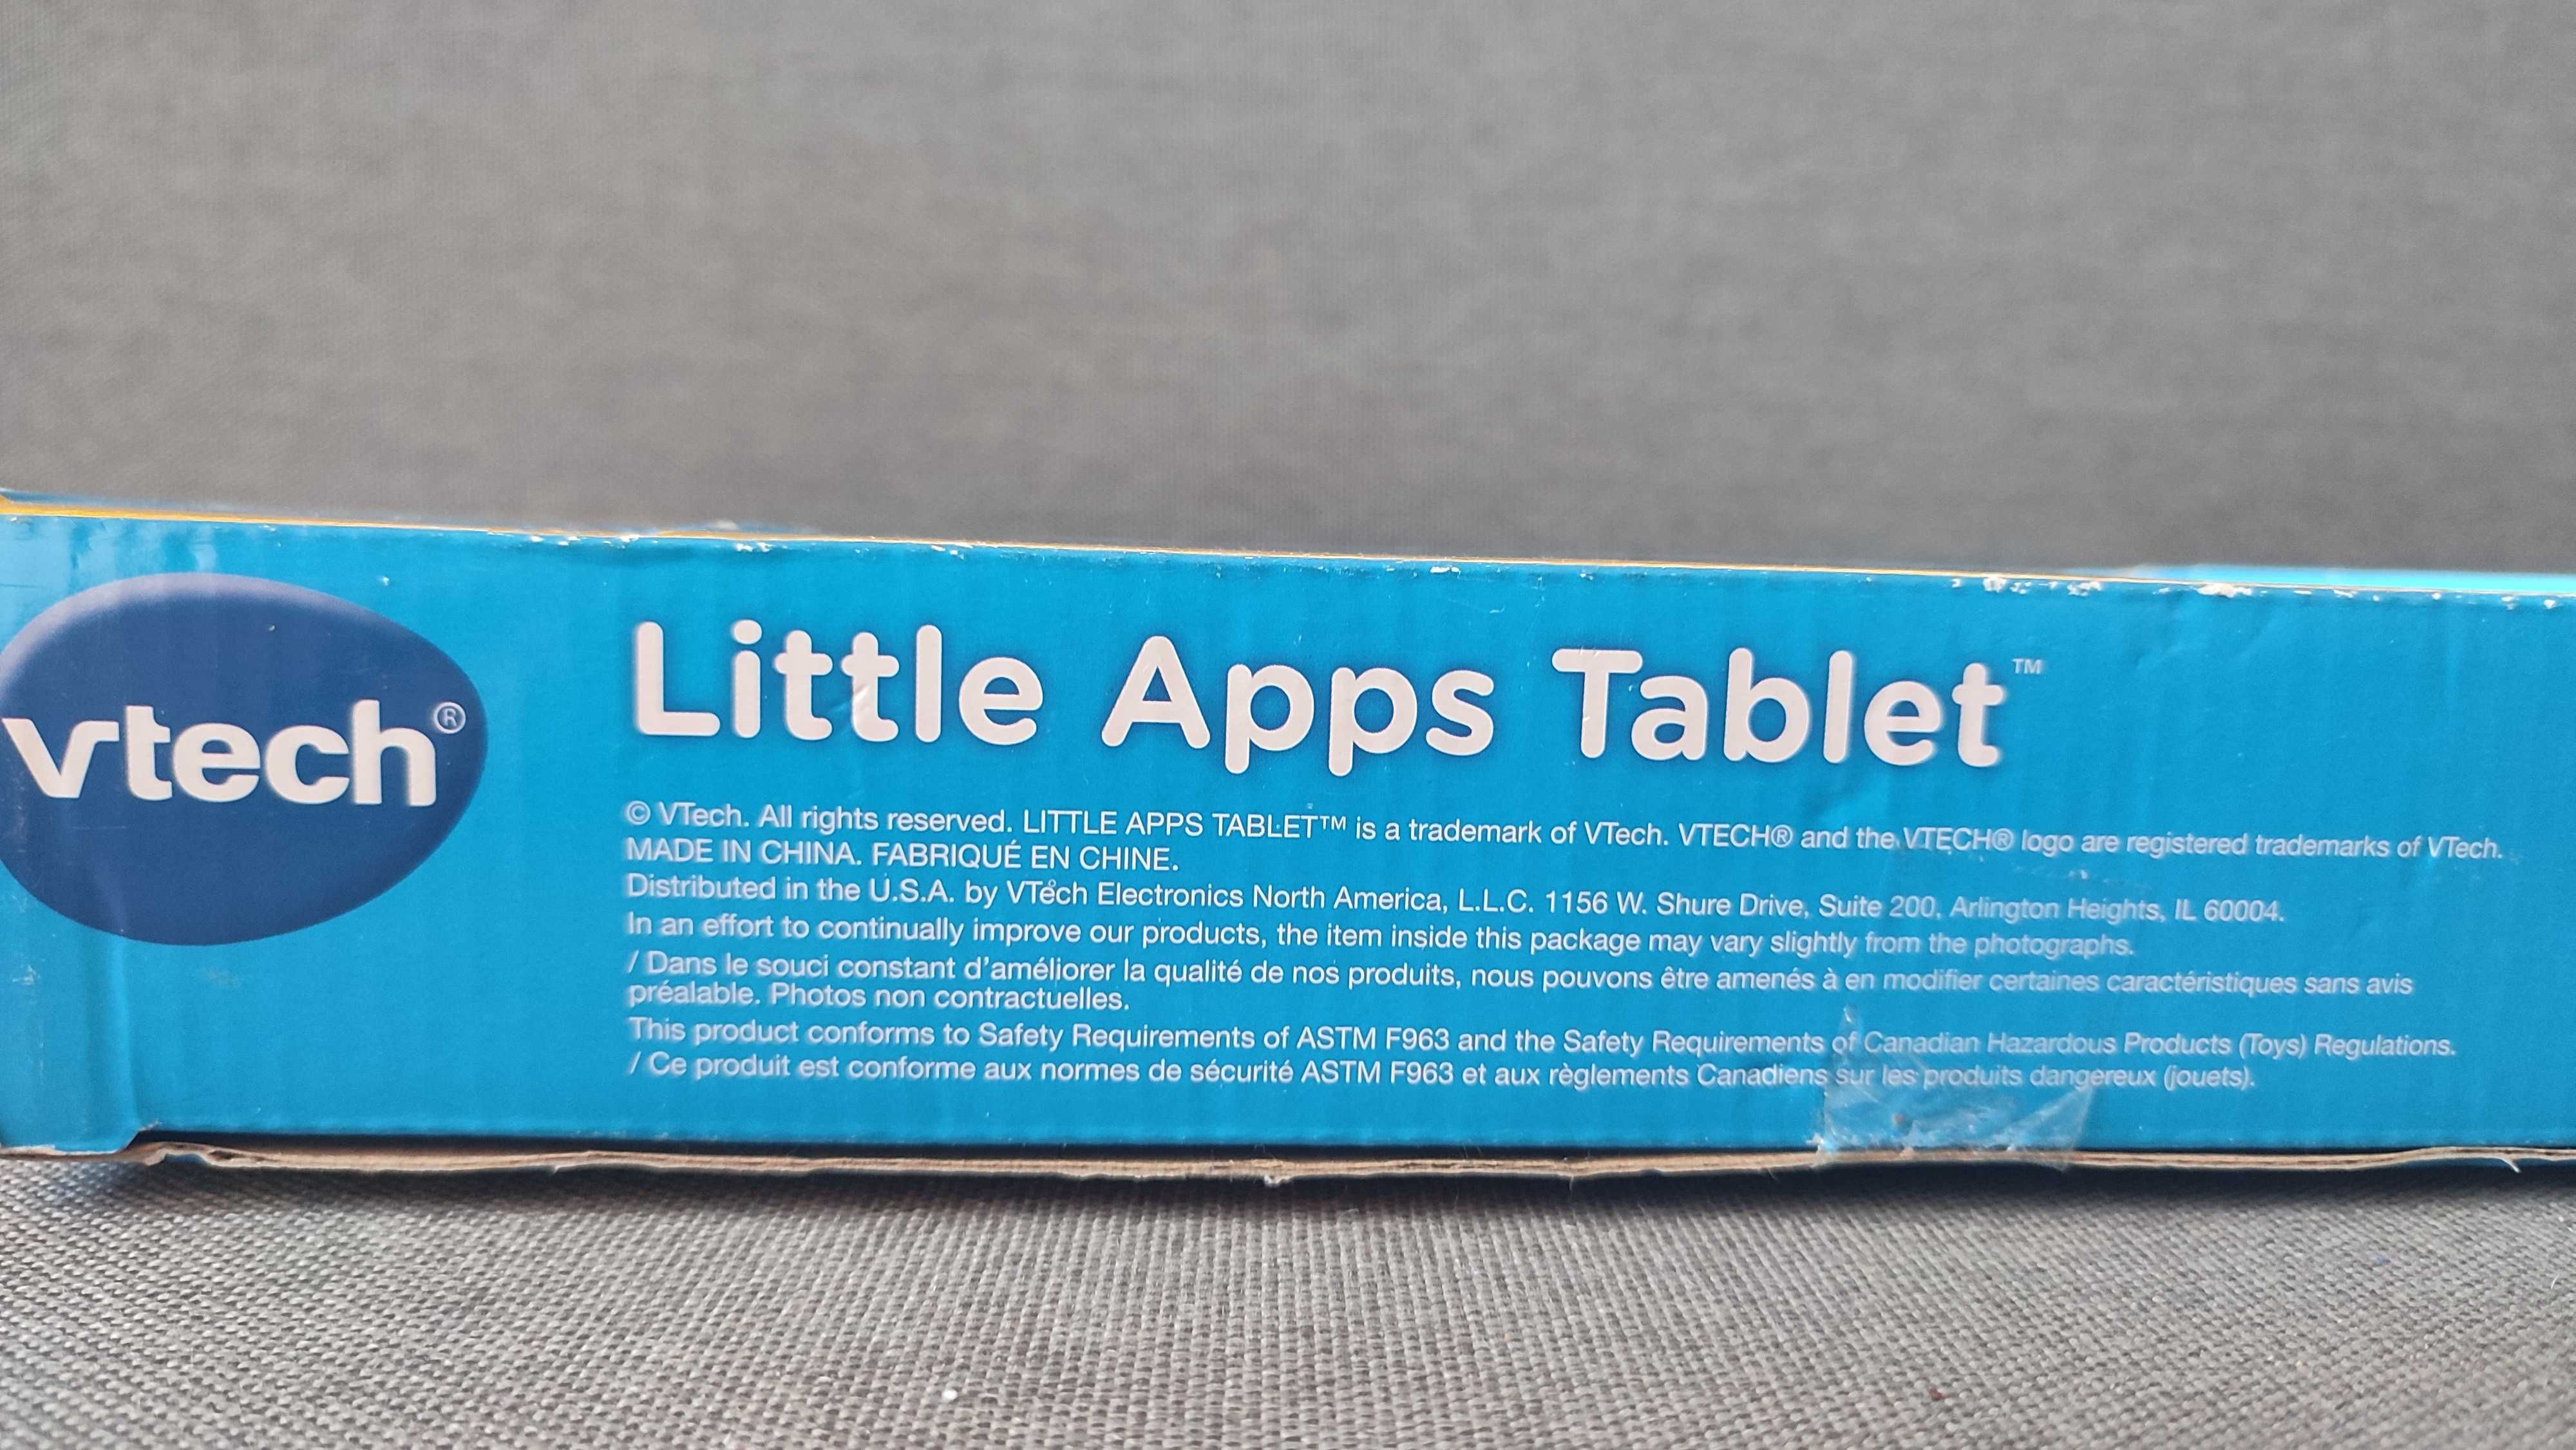 Дитячий навчальний планшет VTech Little Apps Tablet, США